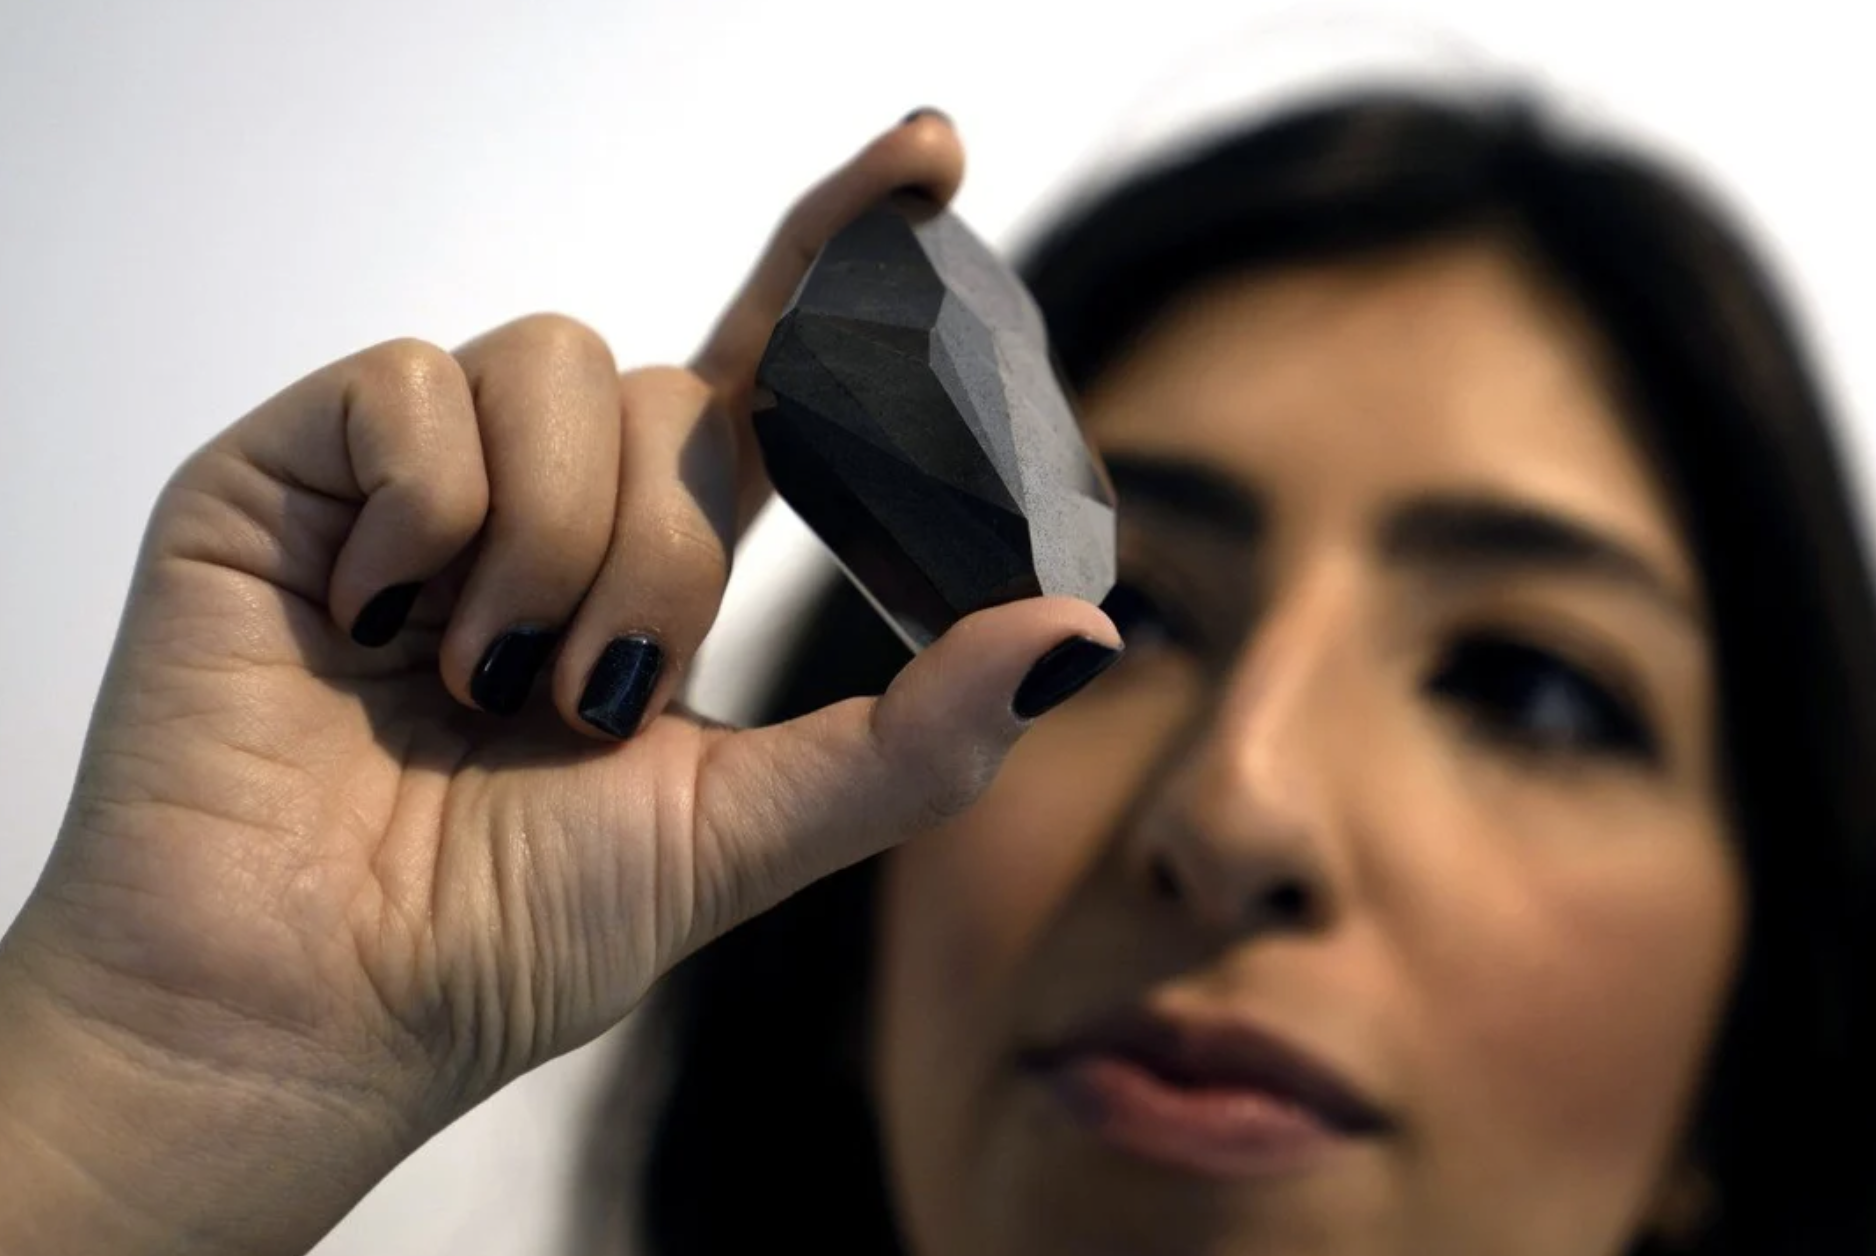 Diament Enigma może zostać sprzedany za 5 milionów dolarów
